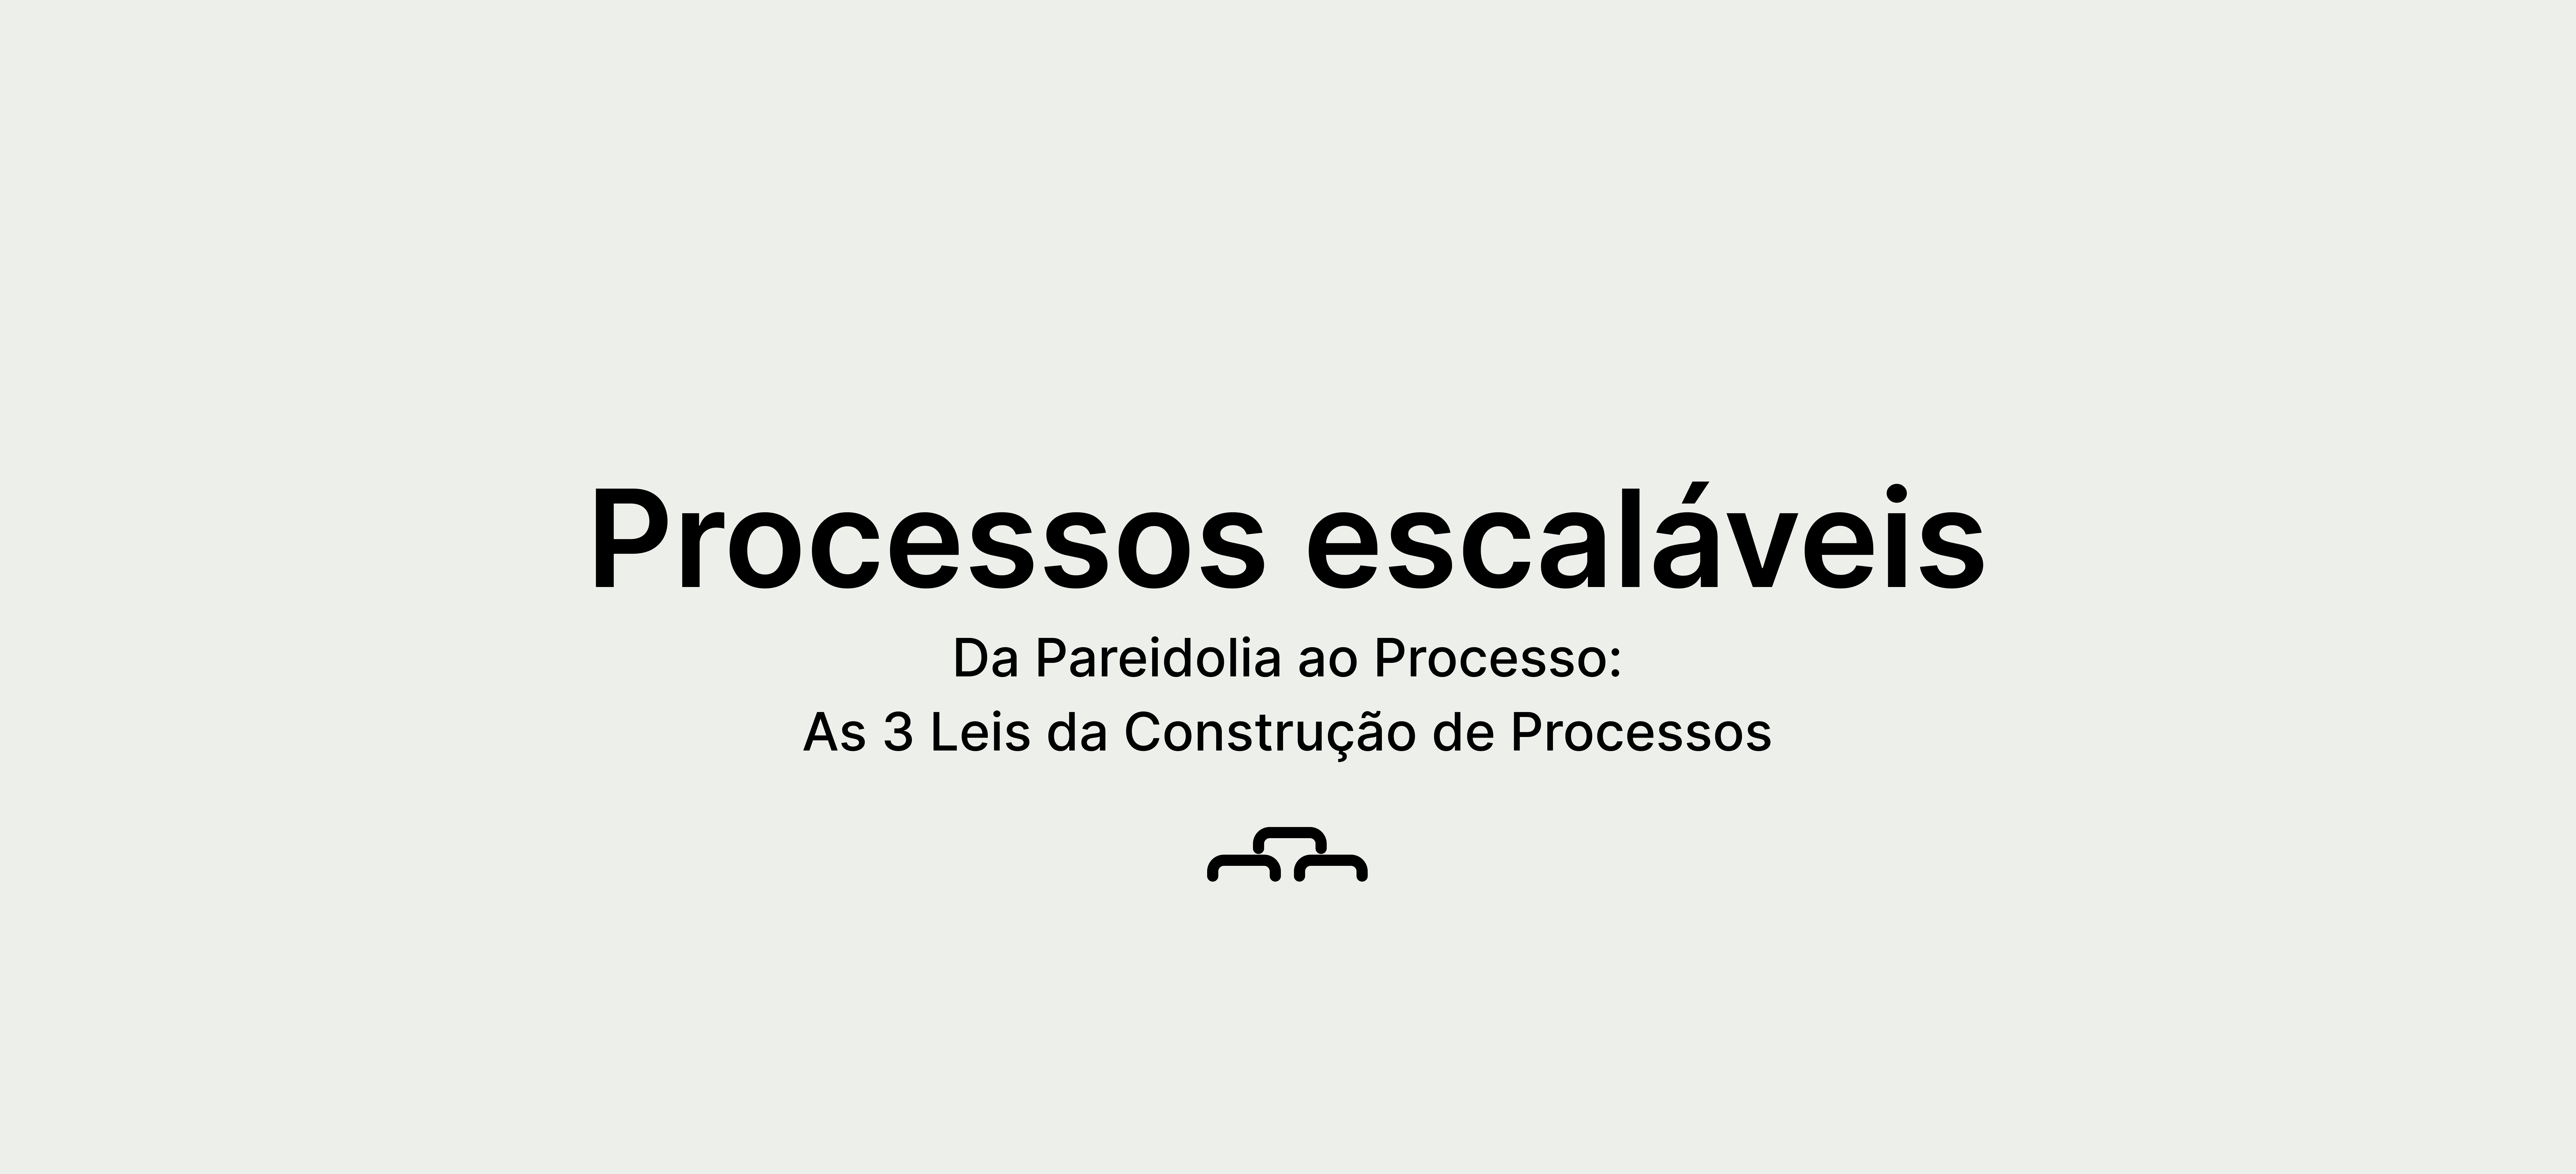 Da Pareidolia ao Processo: As 3 leis de construção de processos